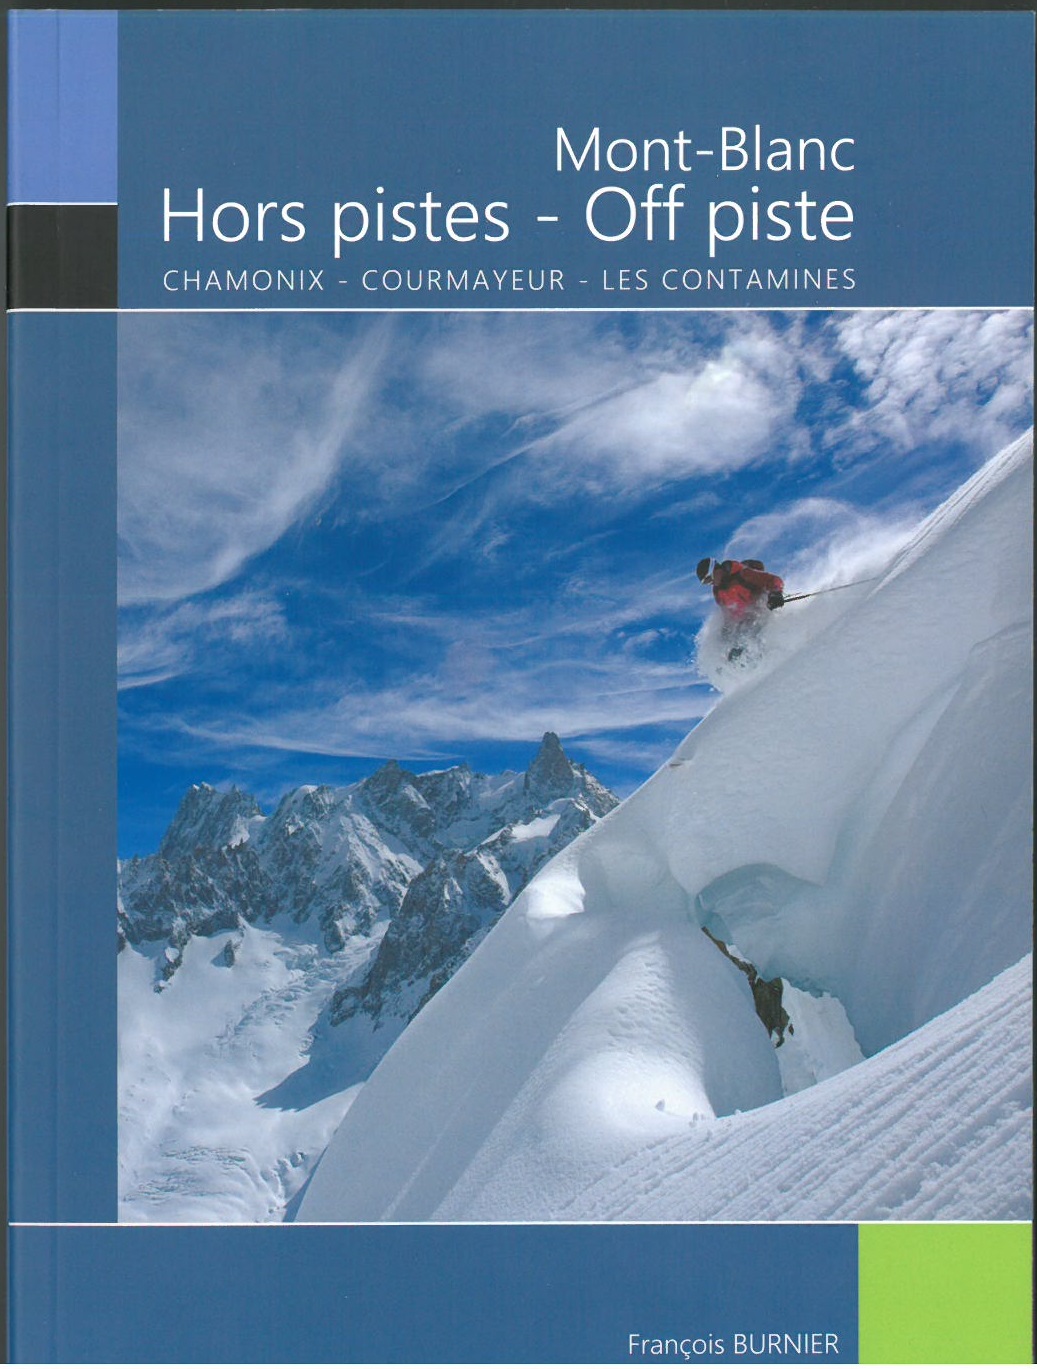 Mont-Blanc Hors pistes - Off piste "Chamonix-Courmayeur-Les Contamines"